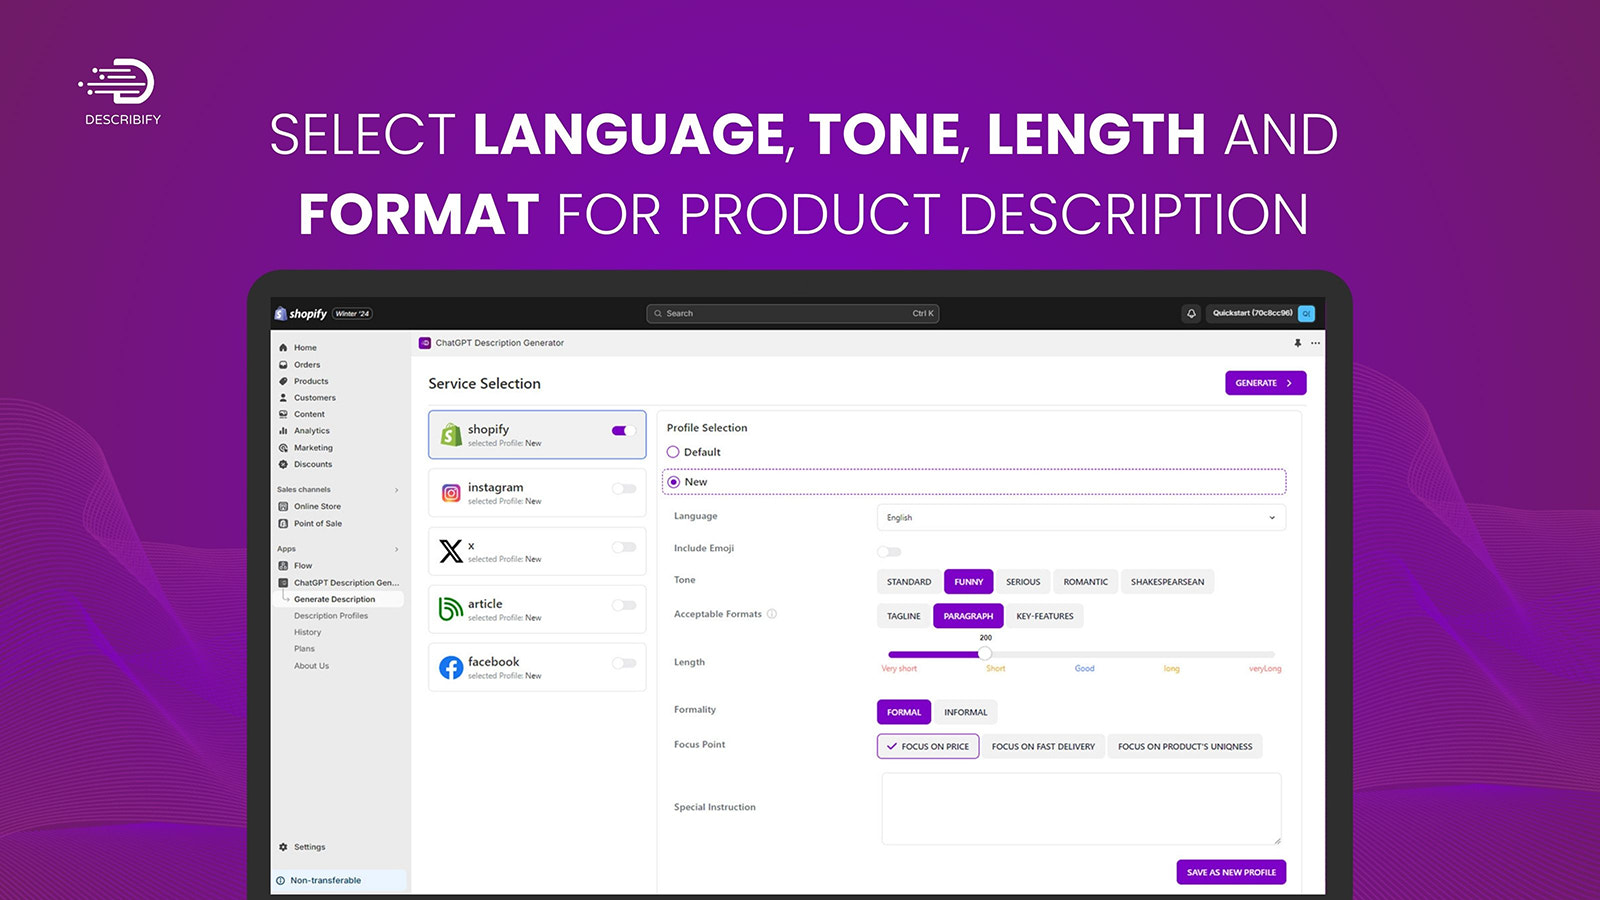 Wählen Sie Sprache, Ton, Länge und Format für die Produktbeschreibung aus